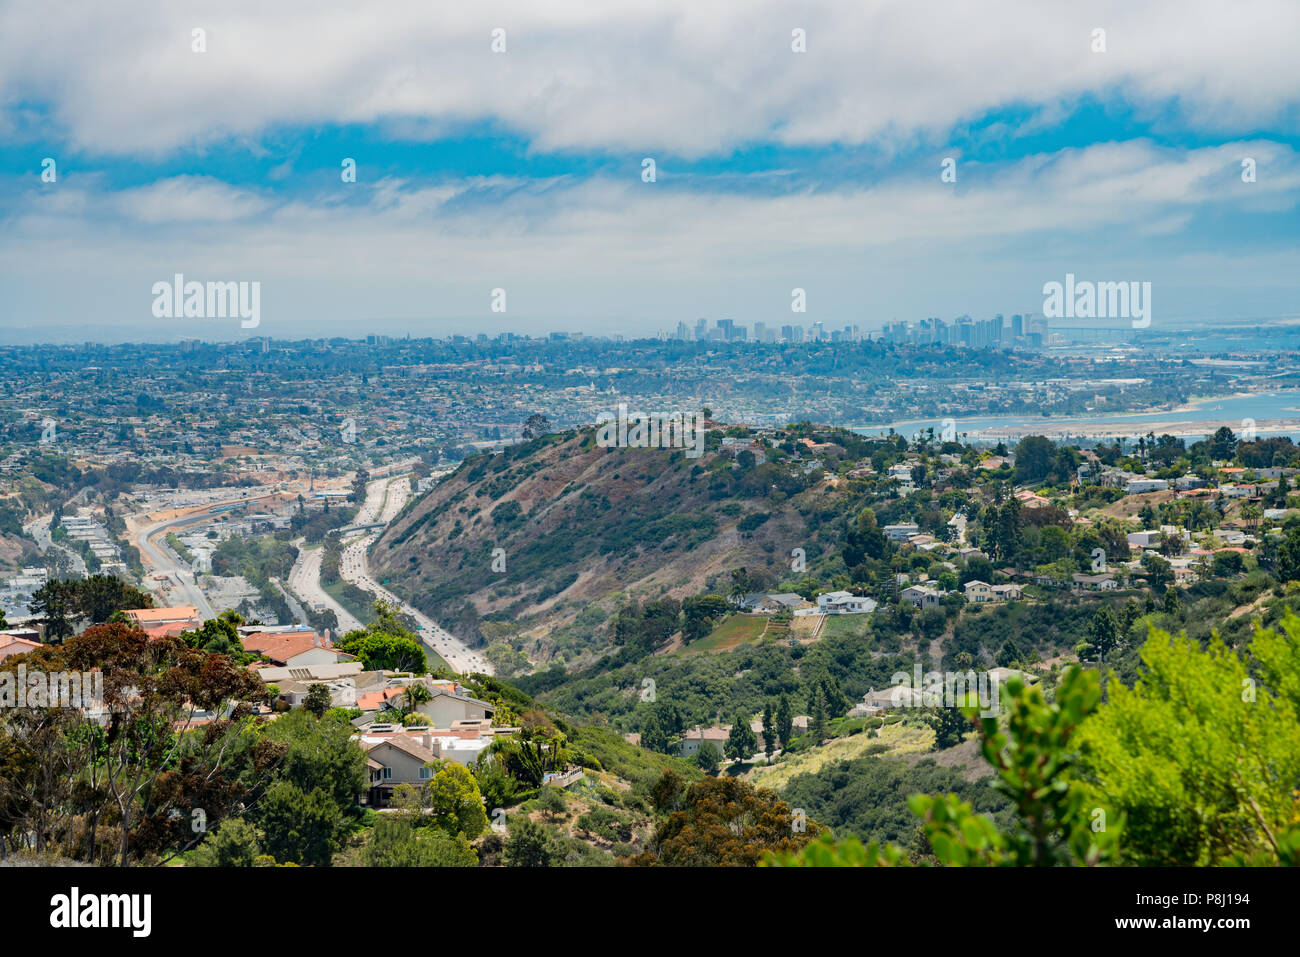 Vista aérea del hermoso paisaje y paisaje urbano alrededor del área de La Jolla de Mt. Soledad Veterans Memorial Nacional, San Diego, California Foto de stock